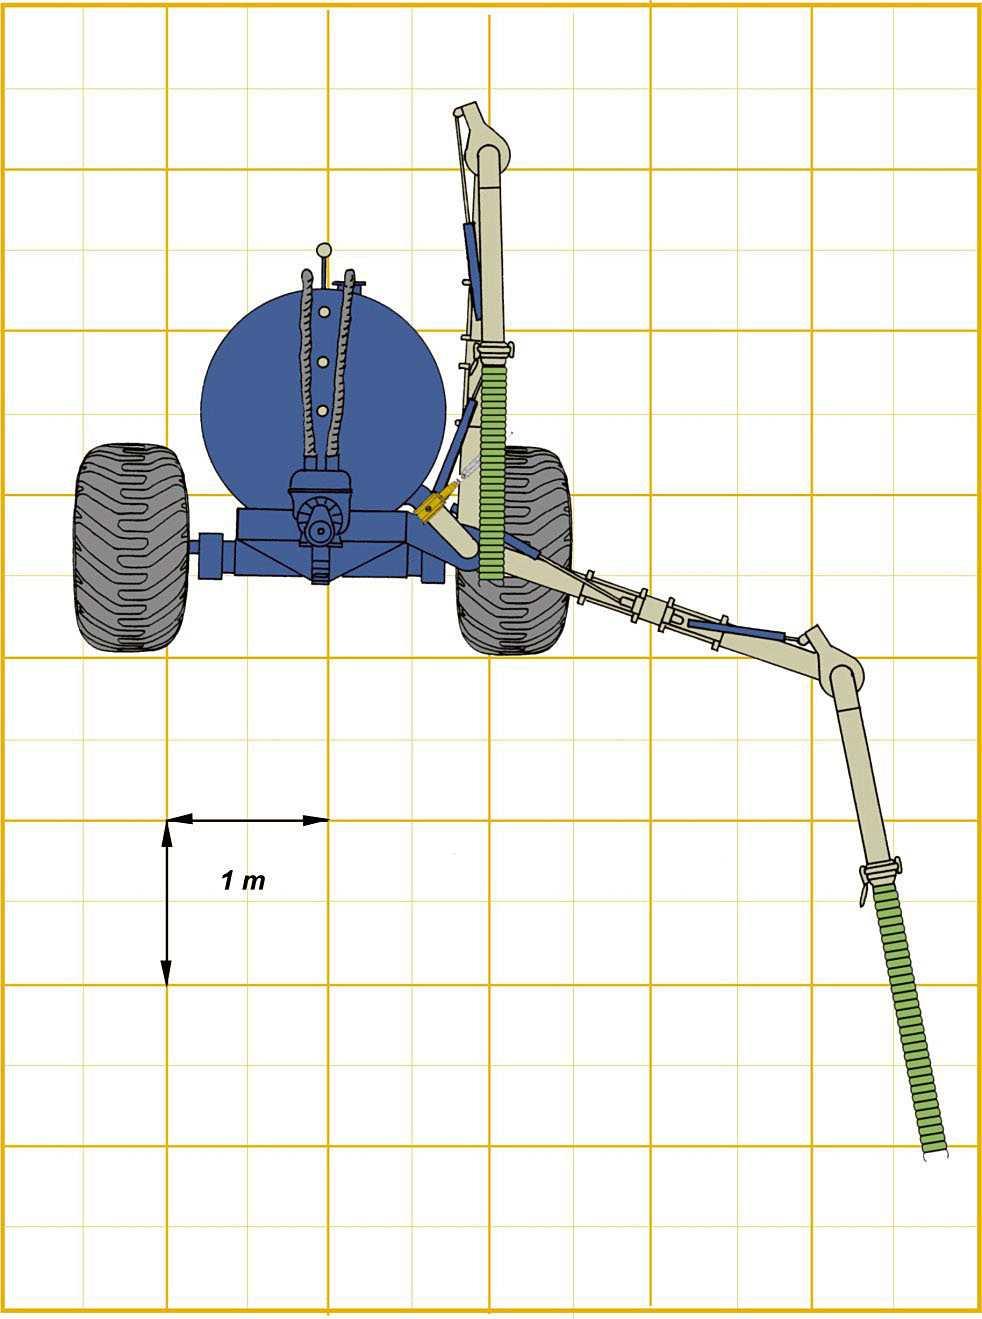 Mikäli traktorissa on kuitenkin vain neljä venttiiliä, voidaan kaksi kraanan toiminnoista kytkeä yhdelle venttiilille.